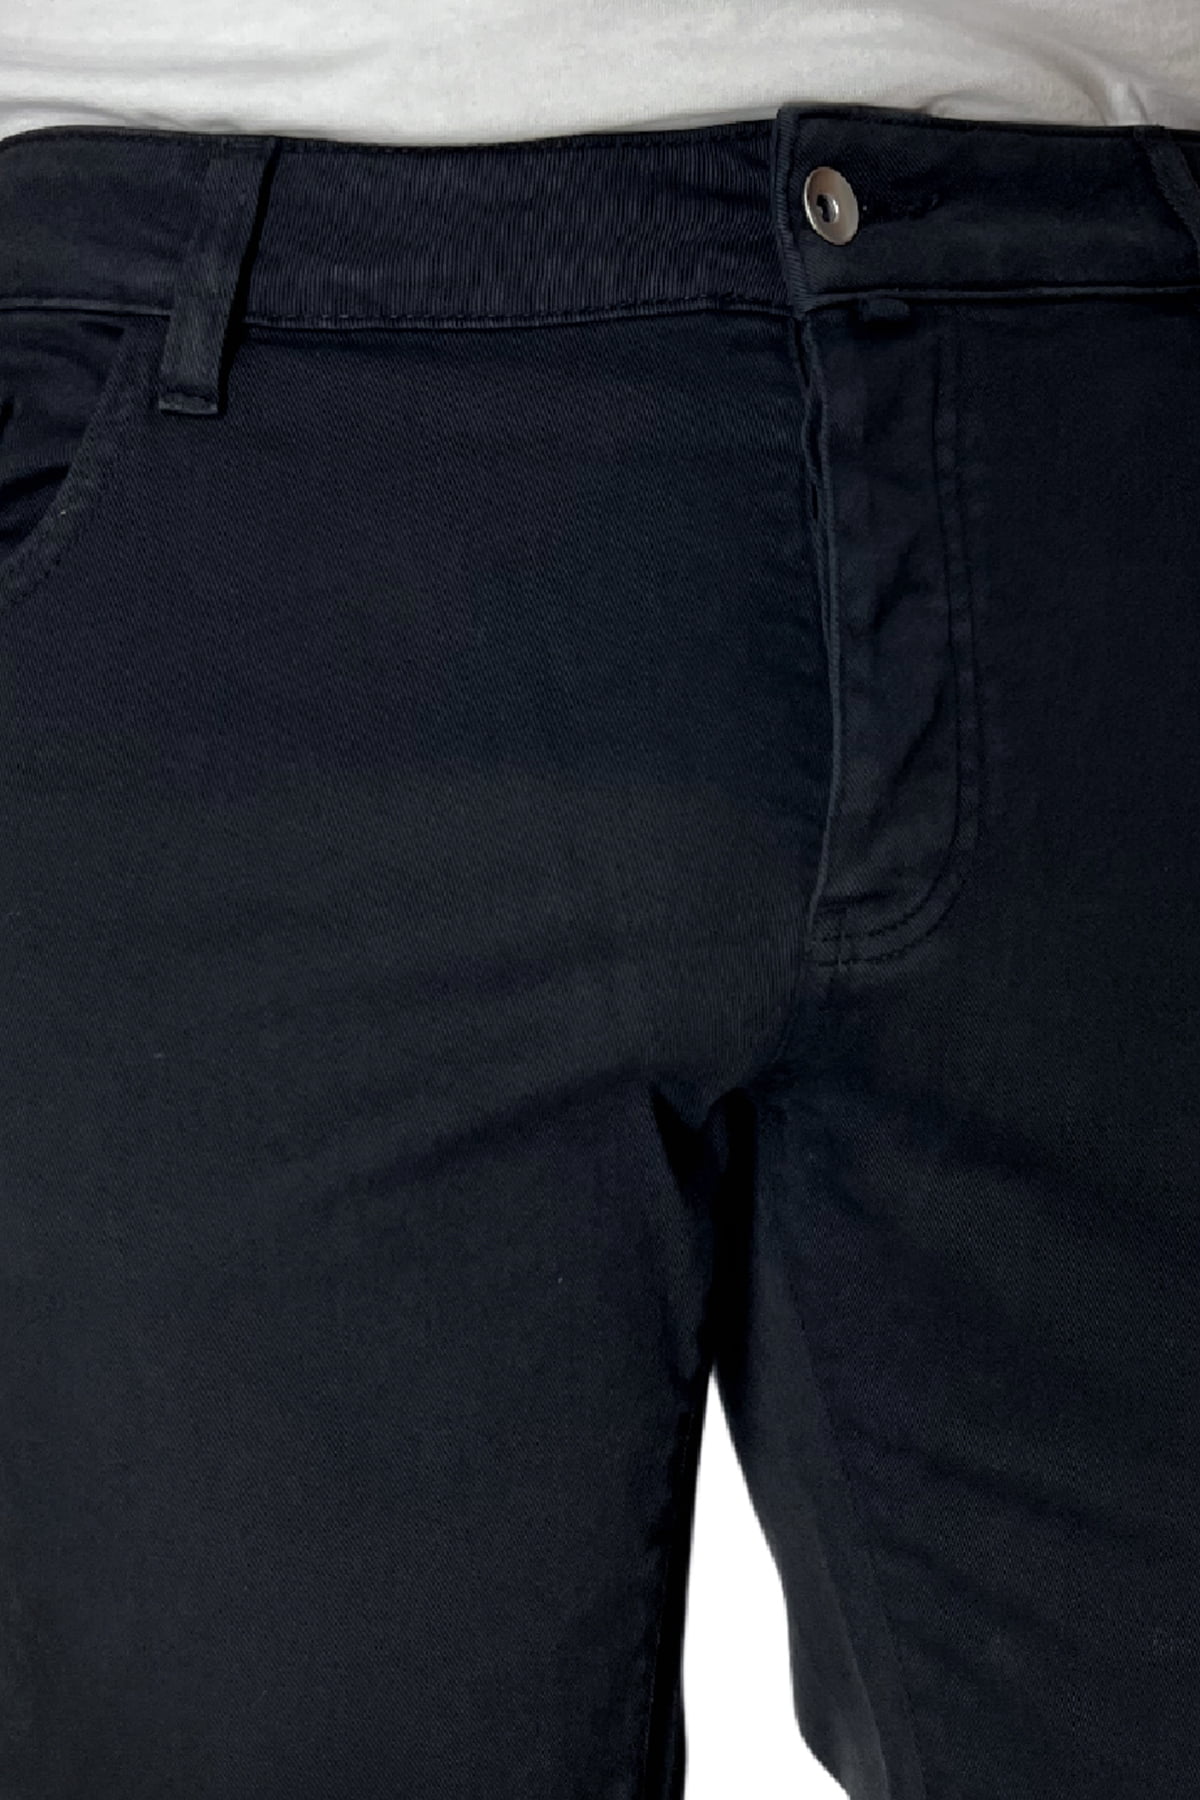 Jeans uomo nero tinta unita modello 5 tasche slim fit estivo made in italy